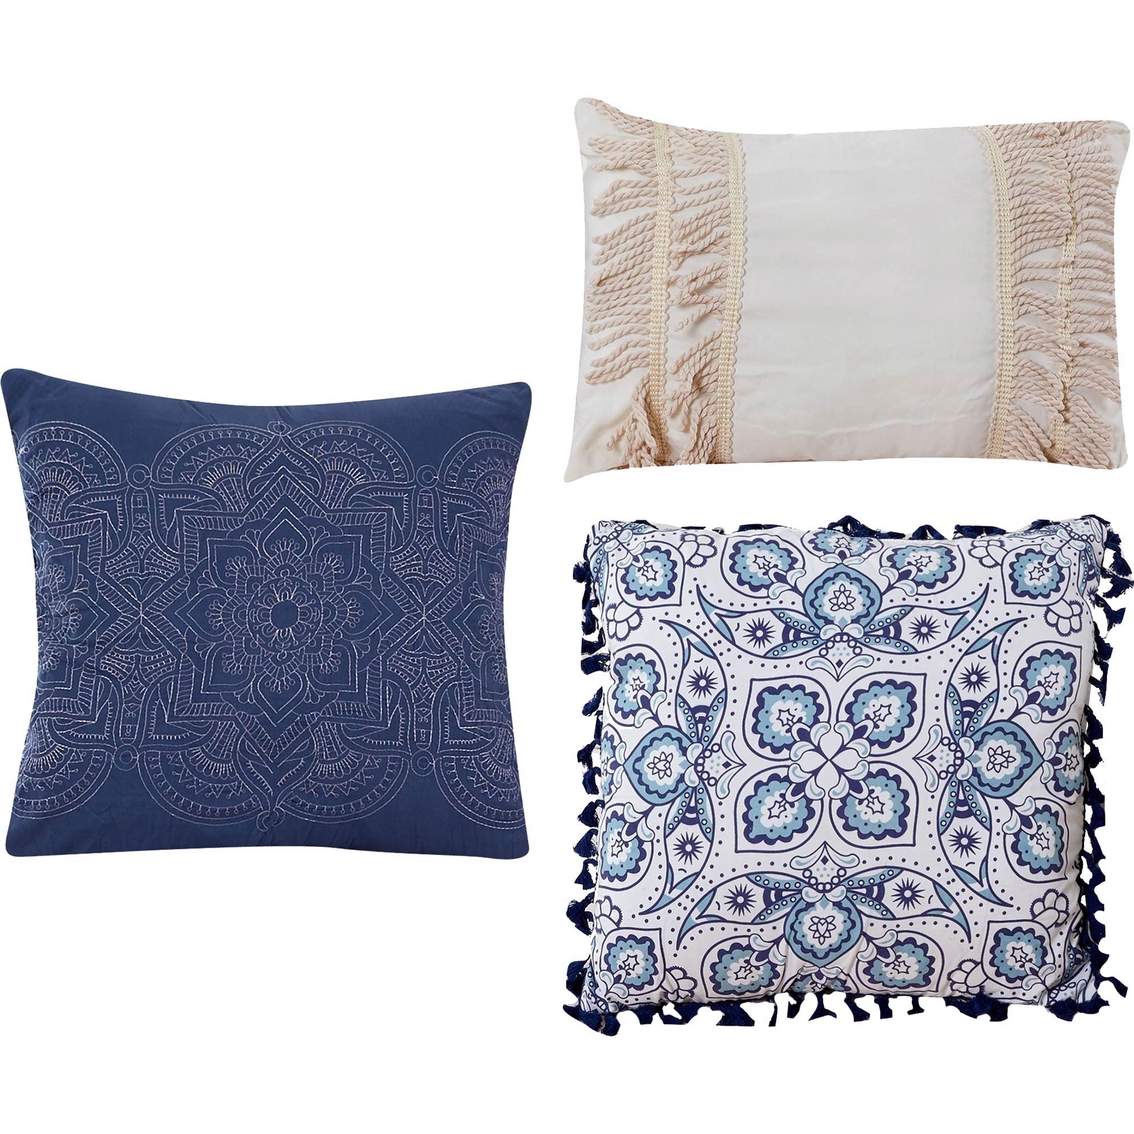 Modern Threads Karina Embellished Comforter Set - Image 5 of 7